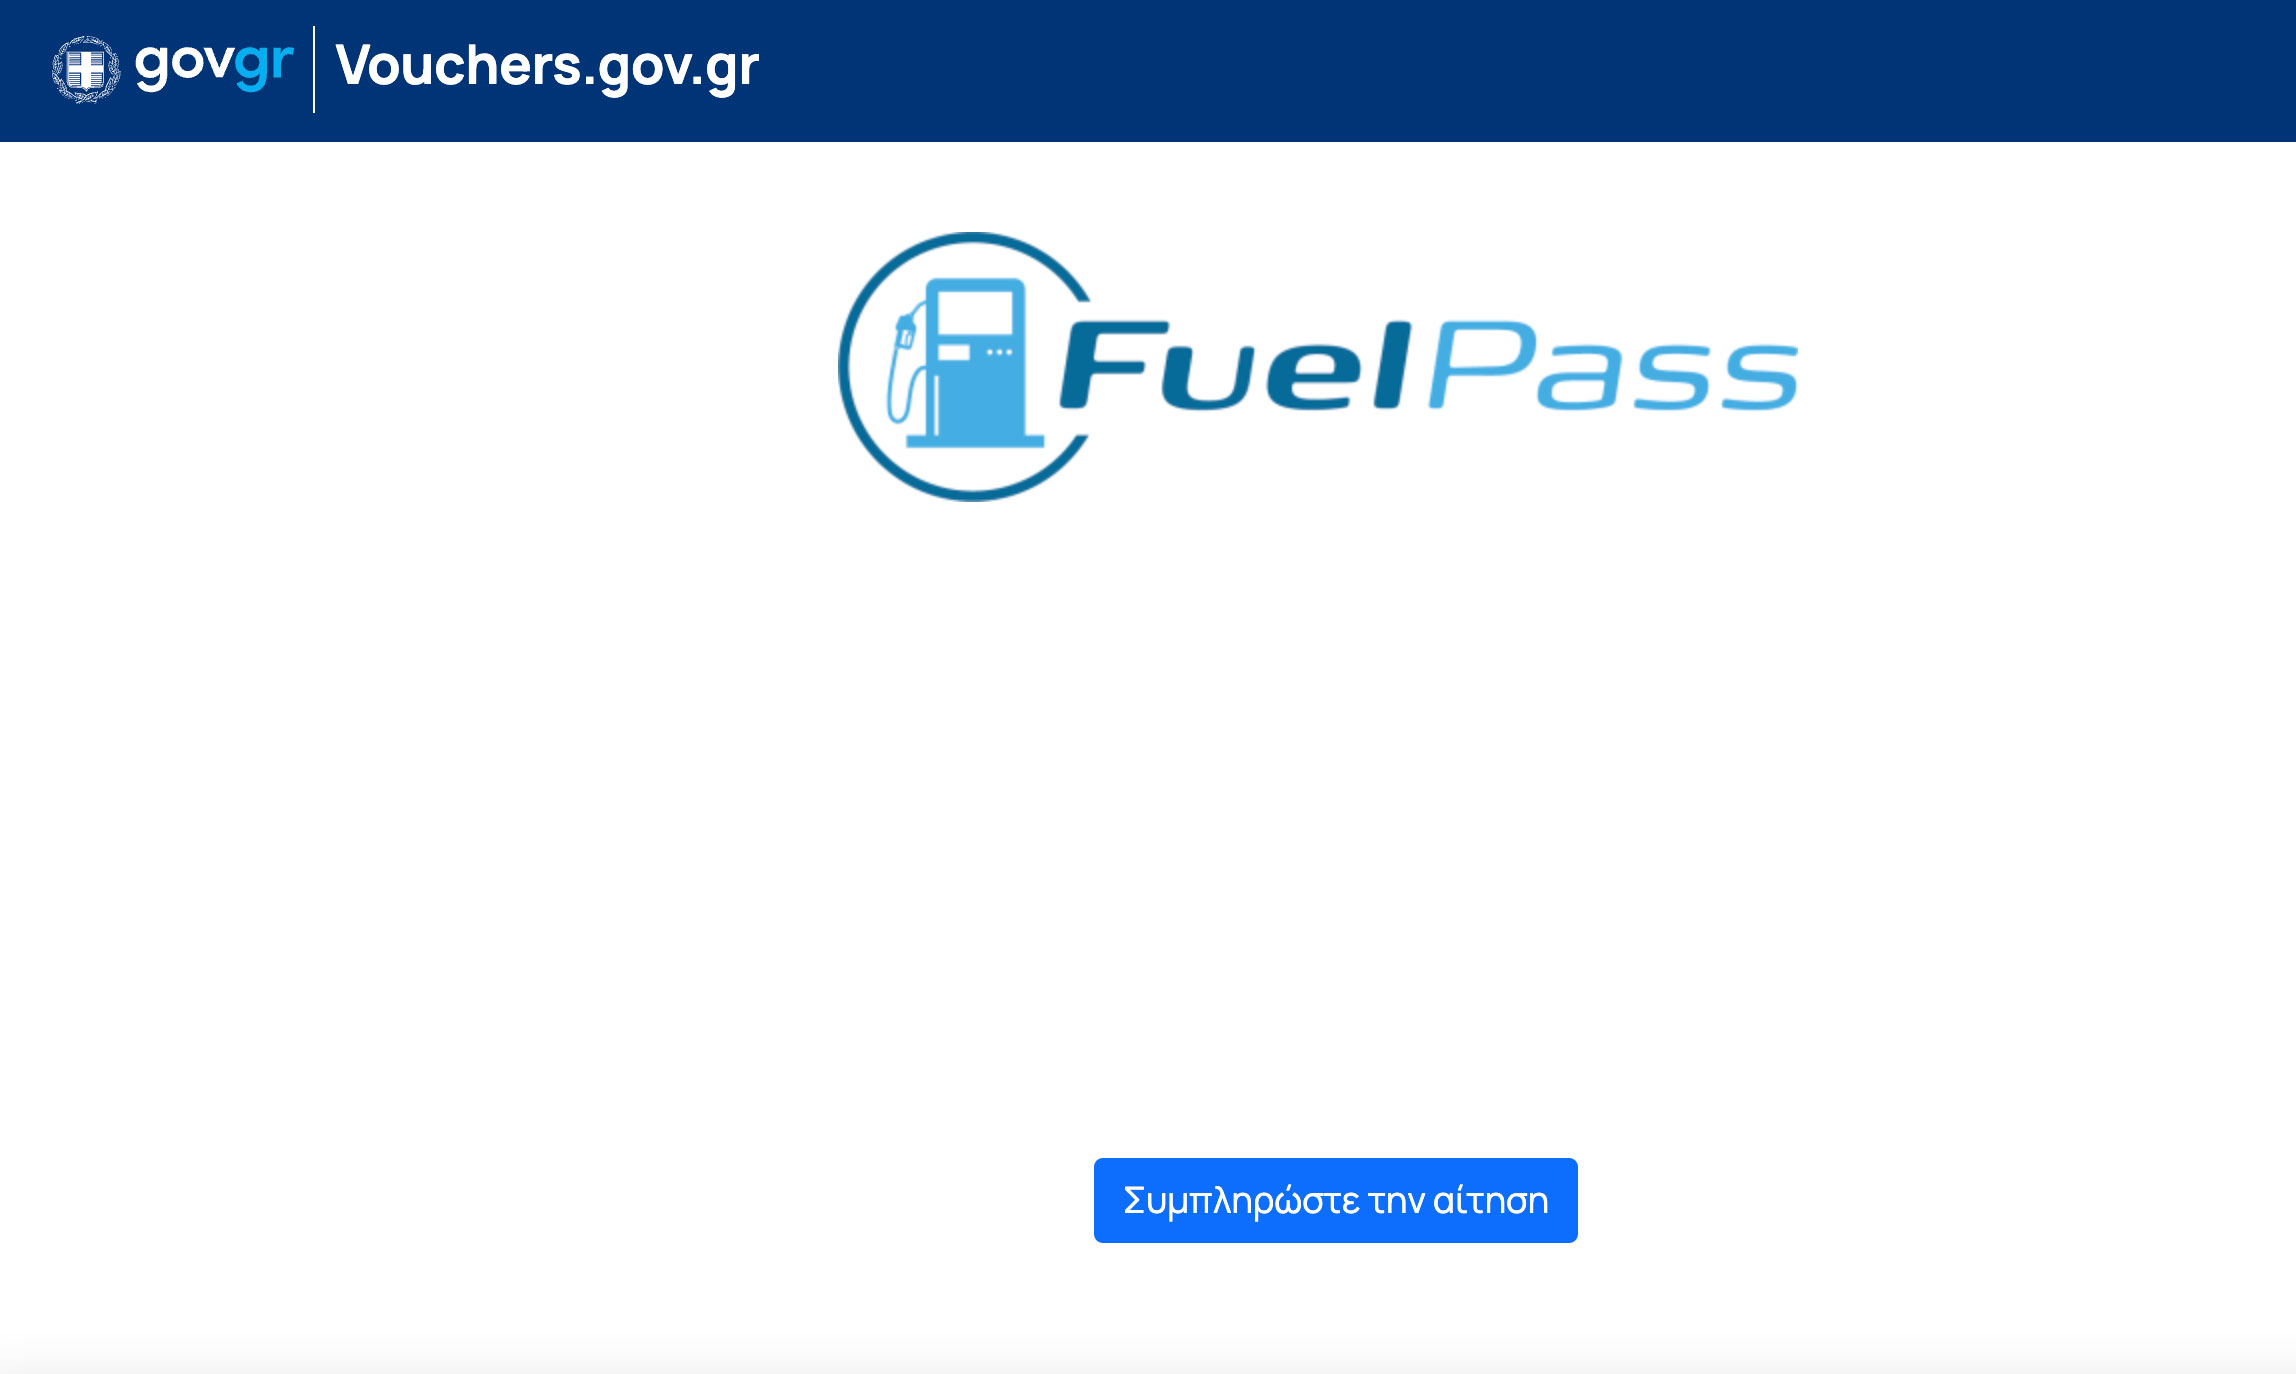 Επίδομα καυσίμων: Πως θα πάρετε μέσω του vouchers.gov.gr το Fuel Pass